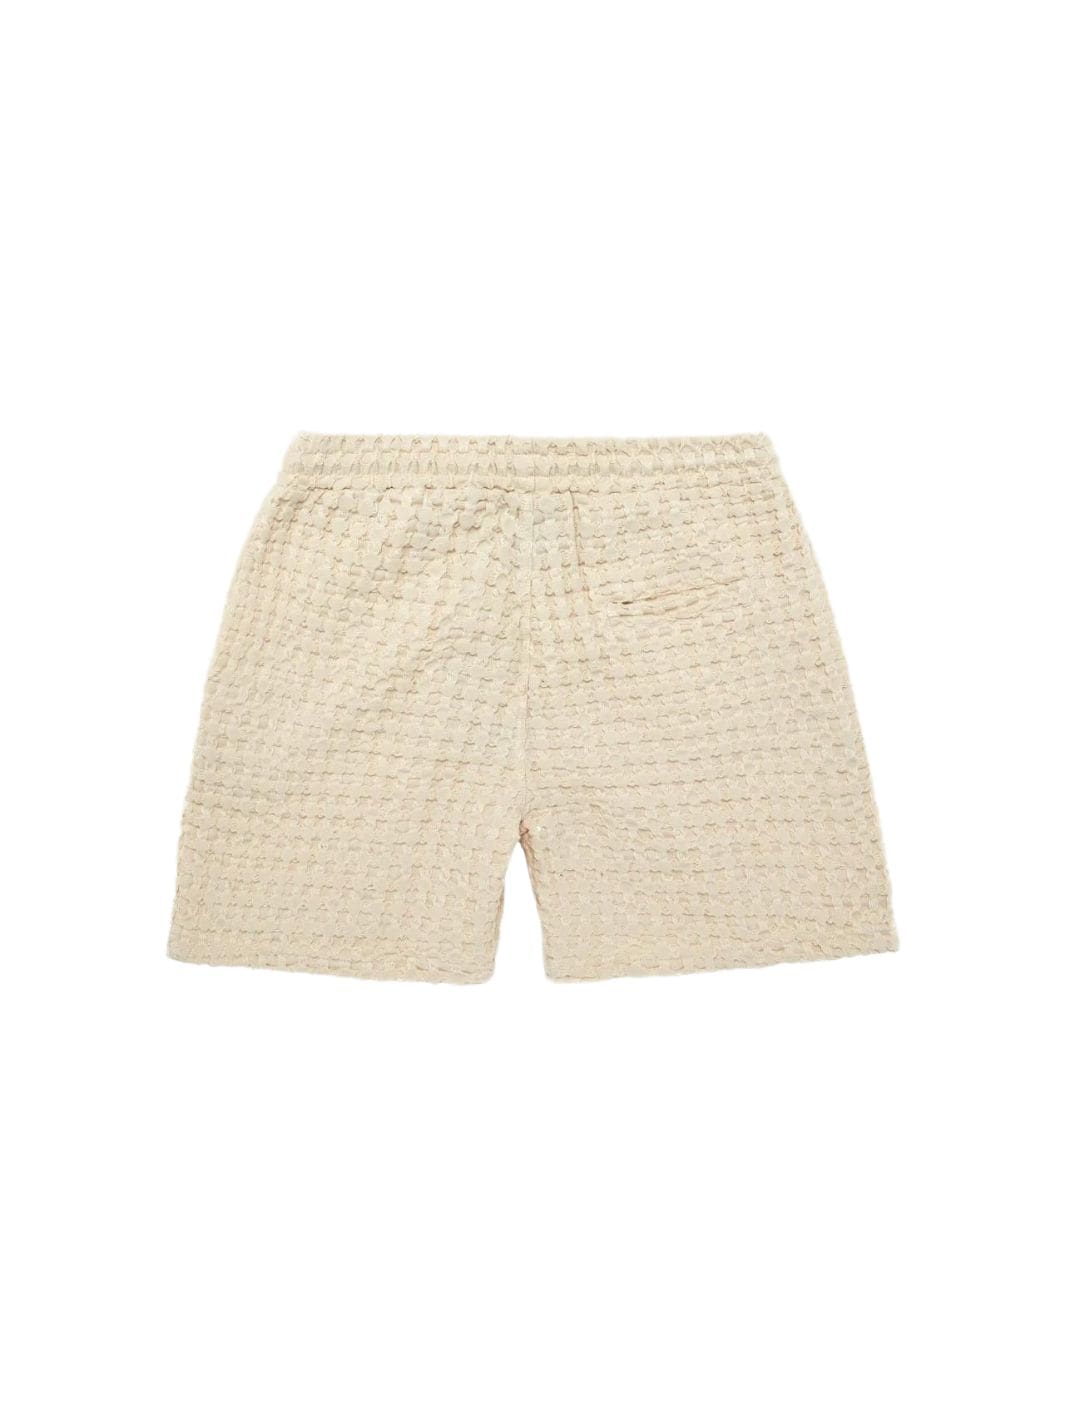 Oas Shorts Shorts | Porto Waffle Shorts Ecru